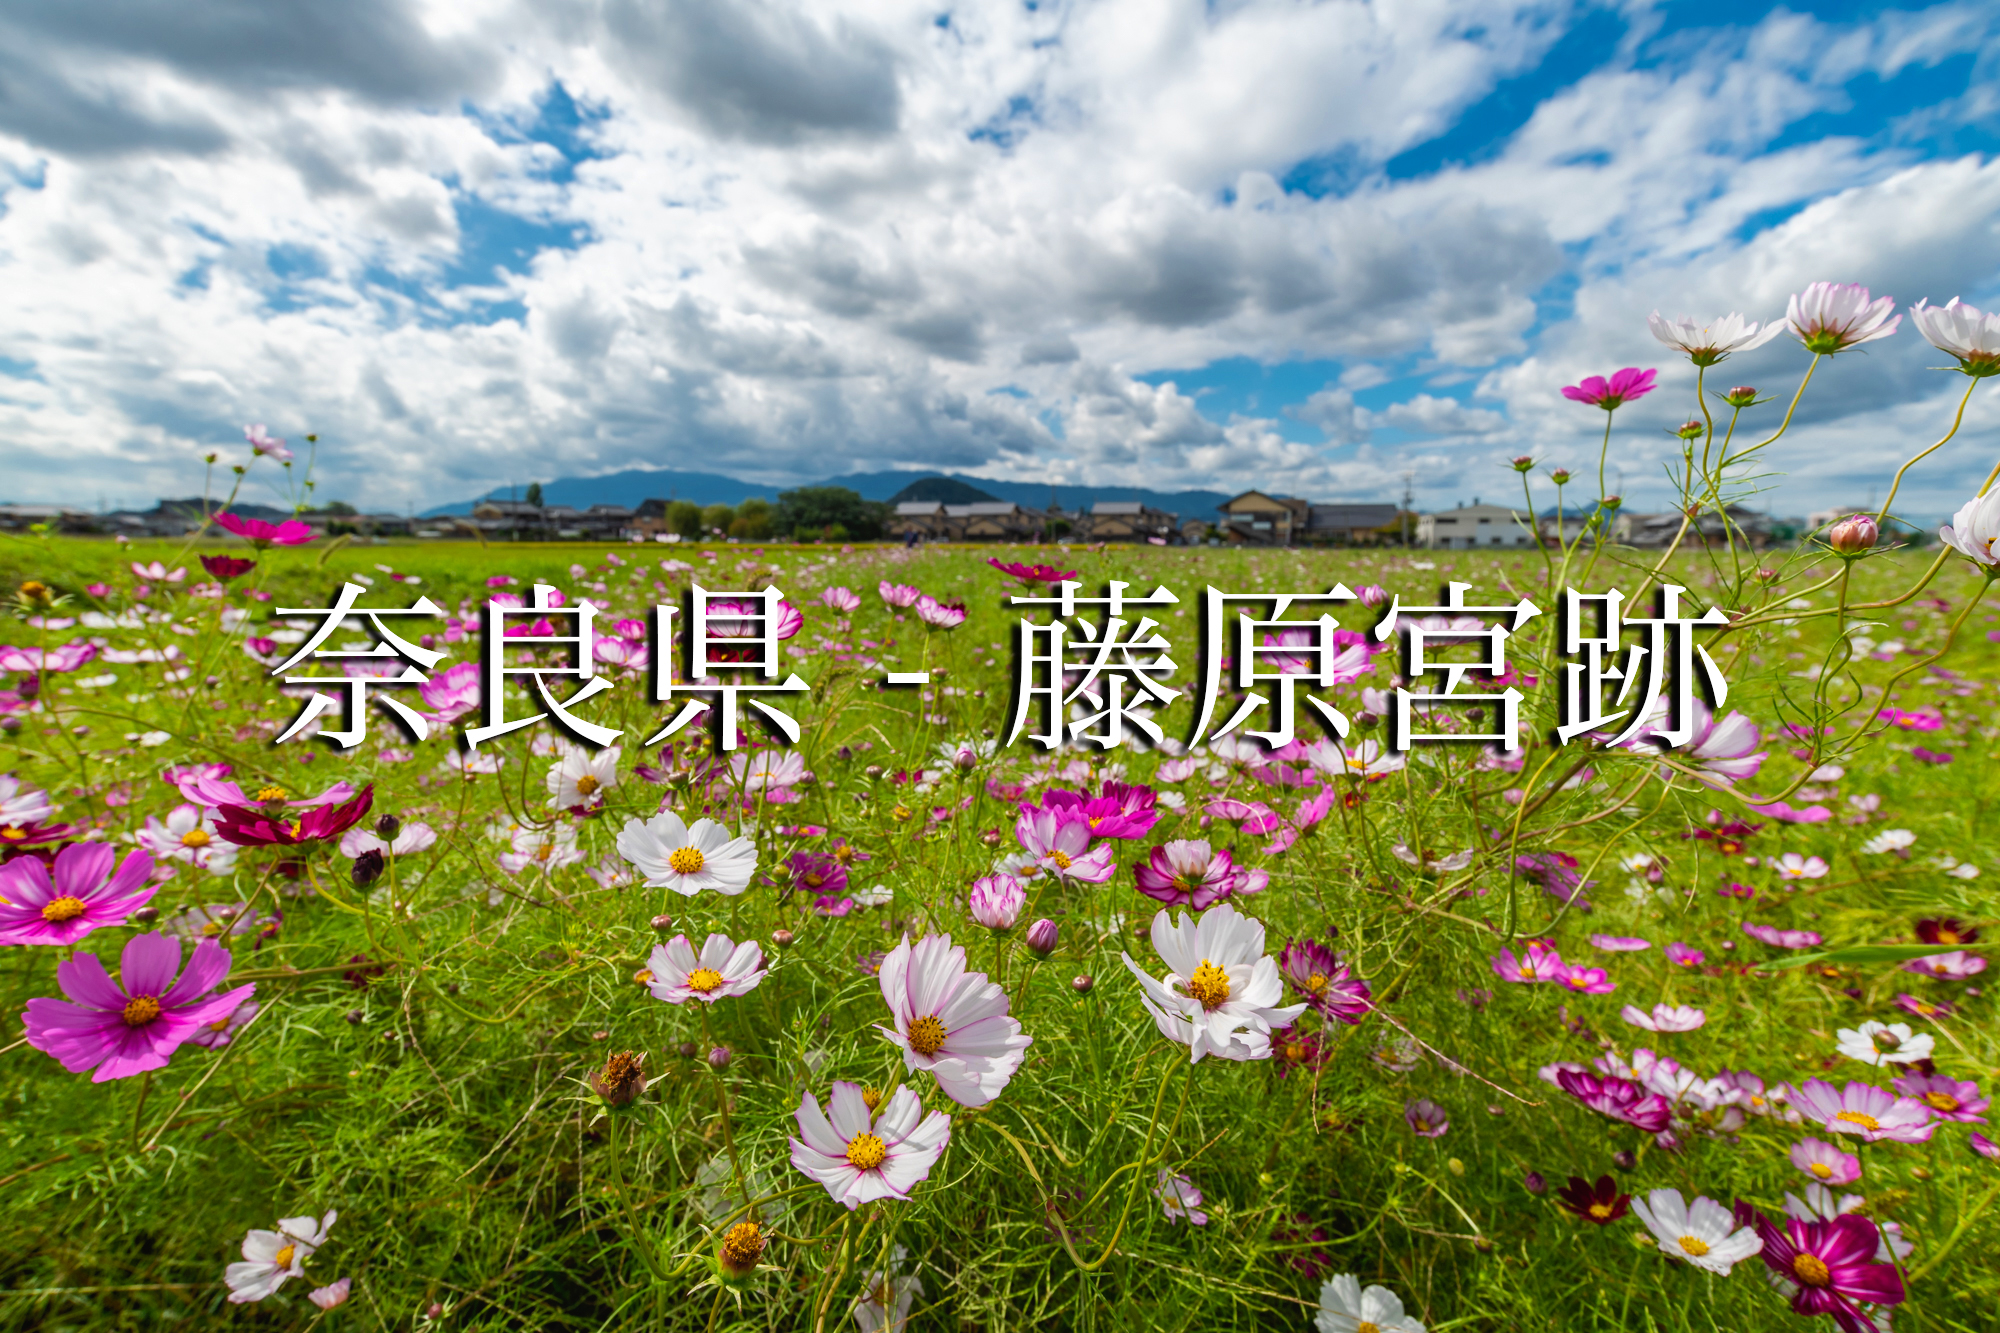 奈良県 藤原宮跡 奈良県の秋におすすめのコスモスが無料で観れる写真スポット 撮影した写真の紹介 アクセス情報や撮影ポイントなど 写真や映像で紹介する関西 近畿の絶景カメラ 観光スポット